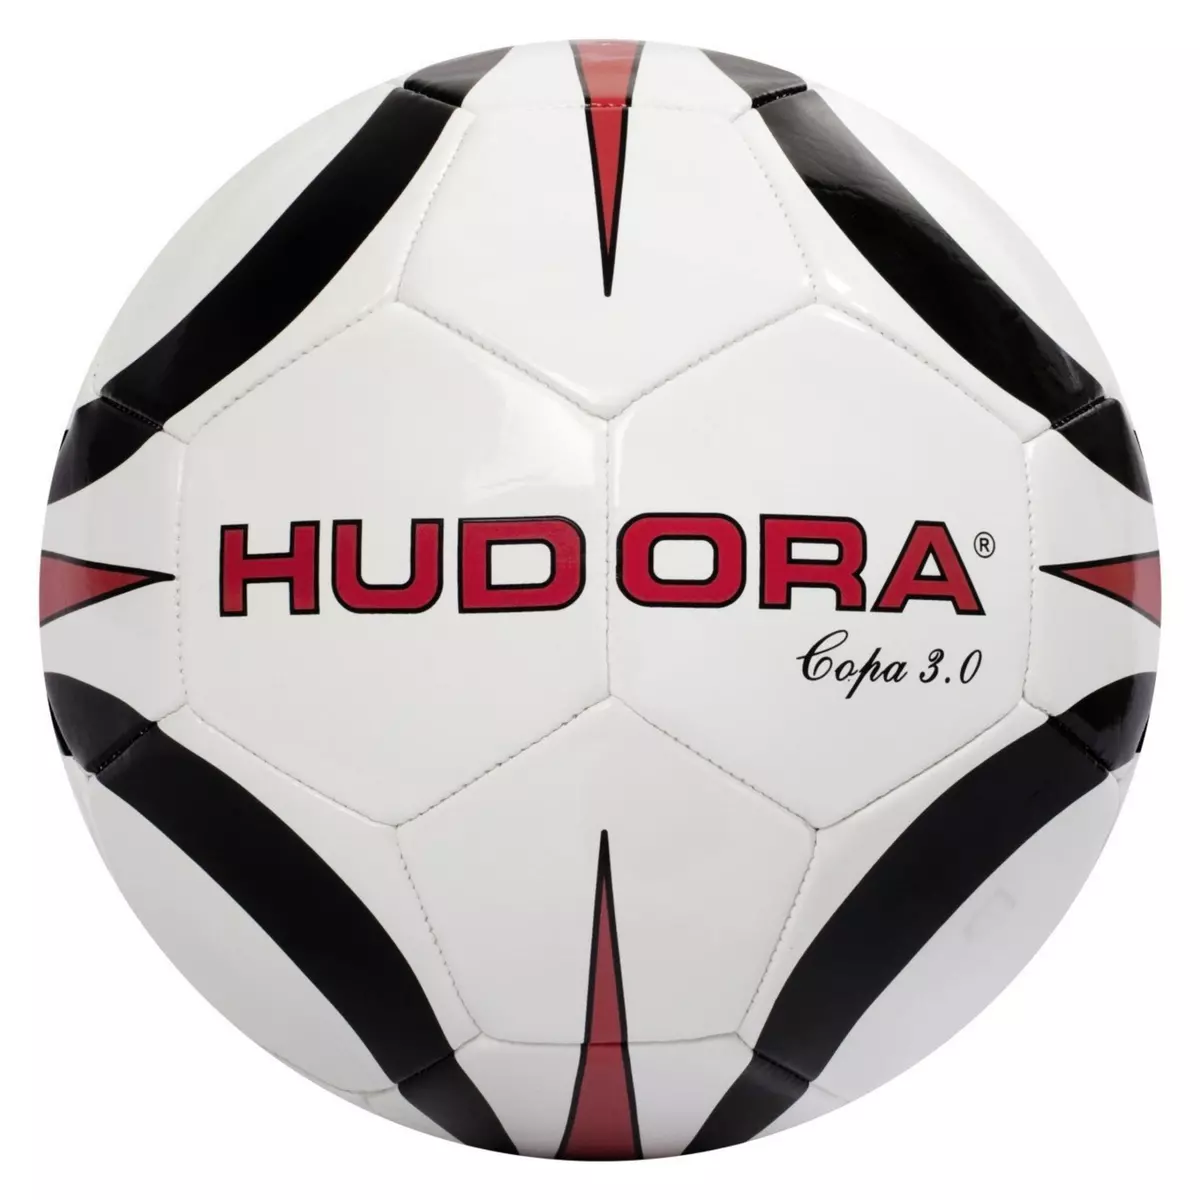 HUDORA Ballon de football Copa 3.0